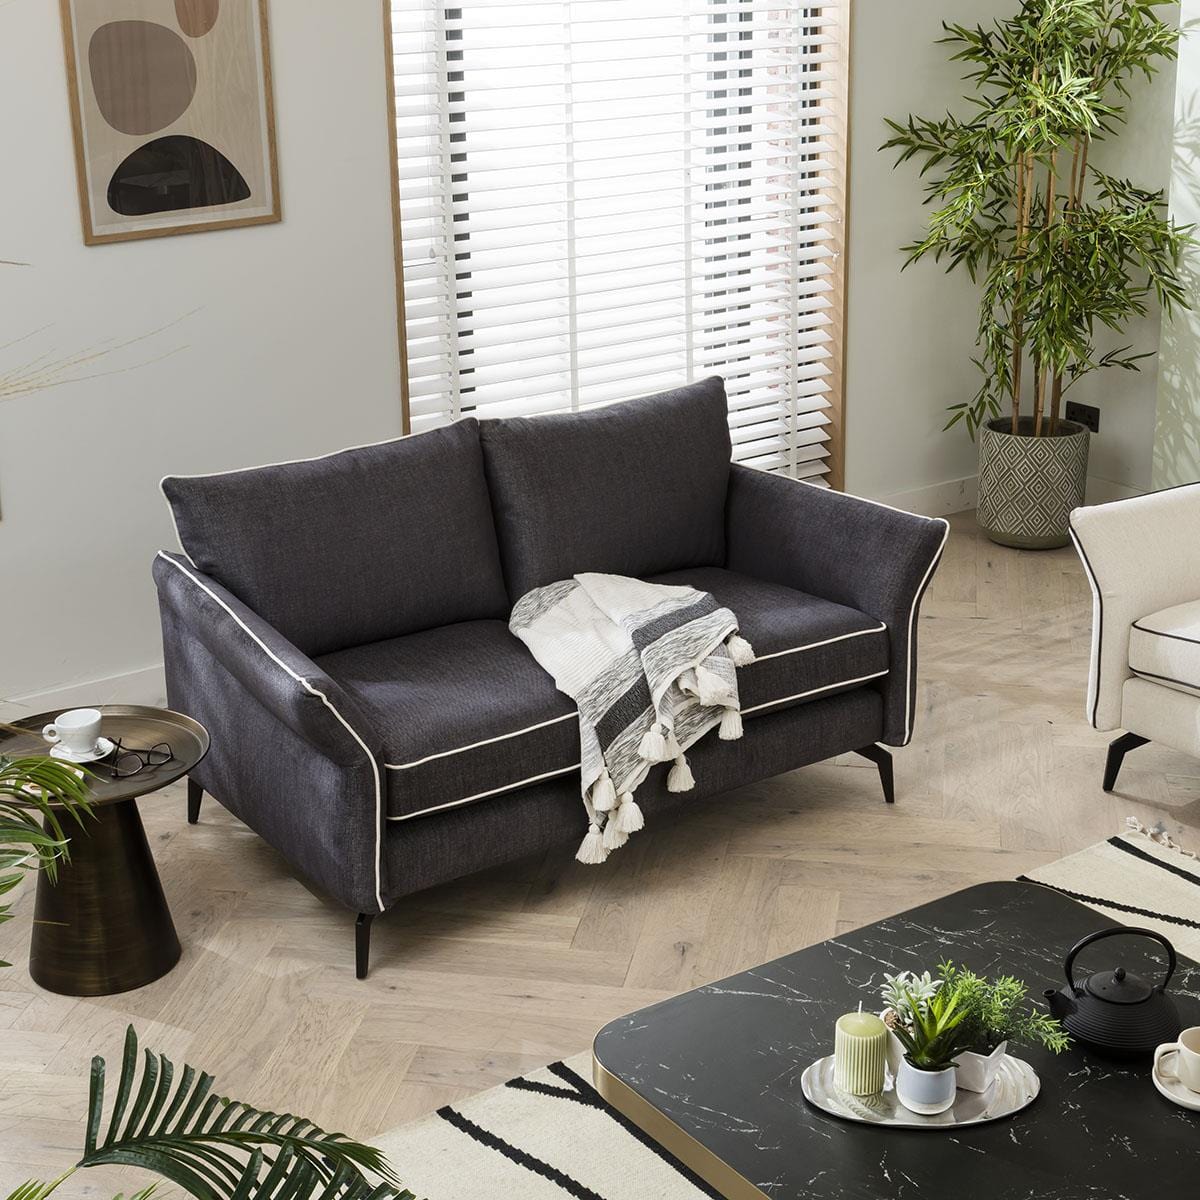 Quatropi Quatropi 2 Seater Fabric Sofa - Modern Flared Arms - Choose Your Fabric - 165cm